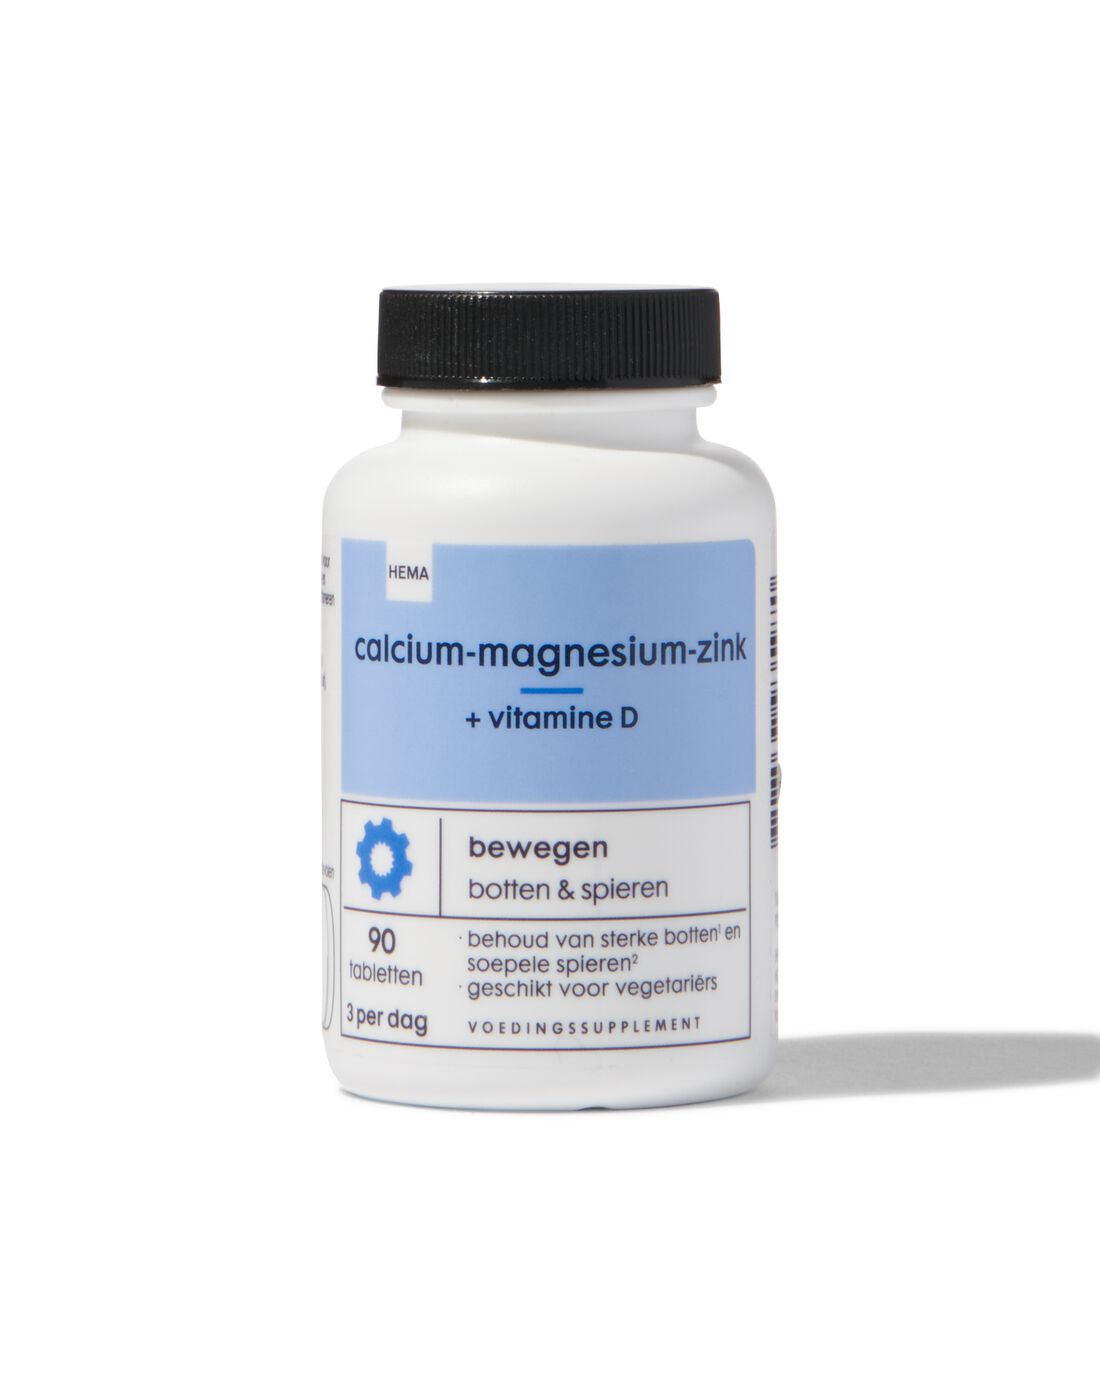 HEMA Calcium-magnesium-zink + Vitamine D 90 Stuks